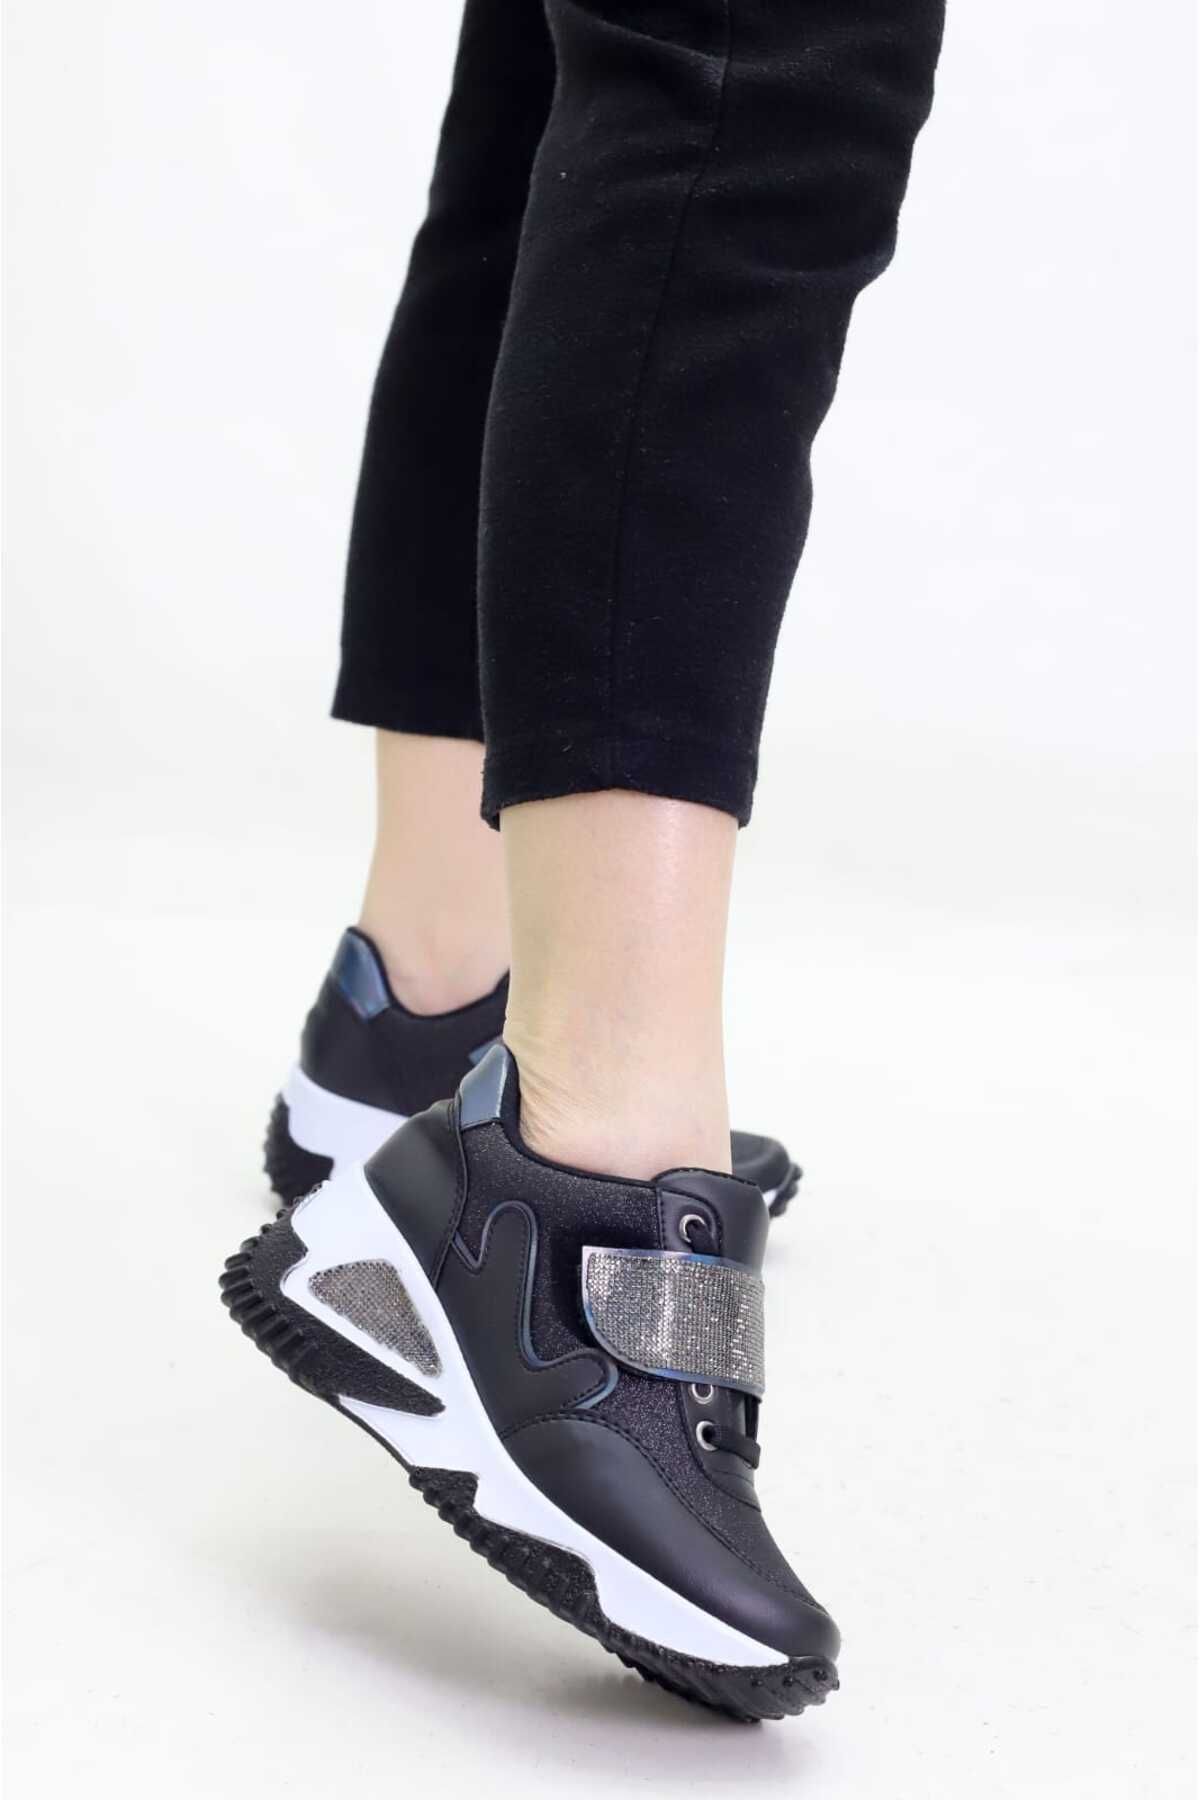 Weynes Kadın Siyah Simli Cırtlı Gizli Topuk Spor Ayakkabı Wsb0766